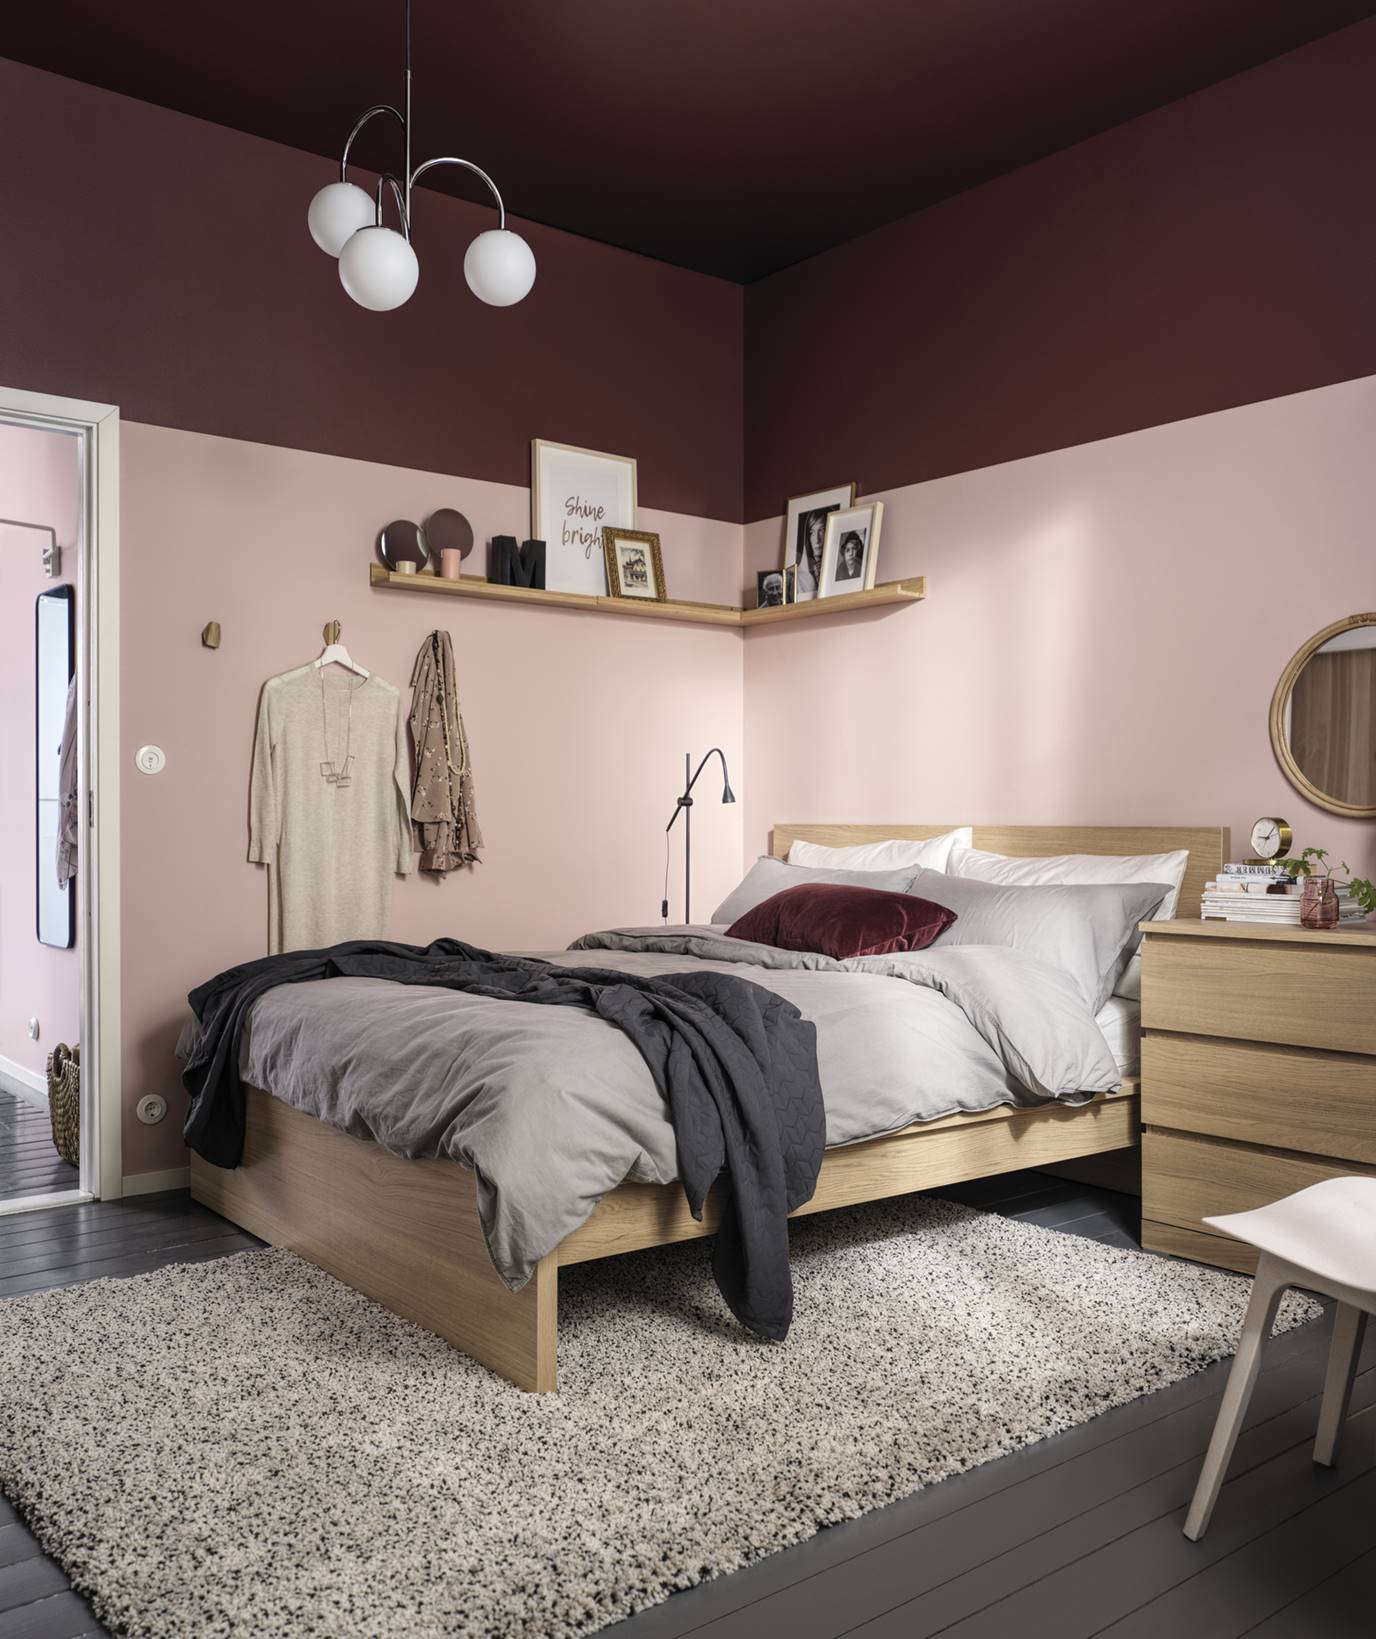 Inodoro lava cigarro IKEA nos sorprende con lo nuevo para el dormitorio del catálogo 2021